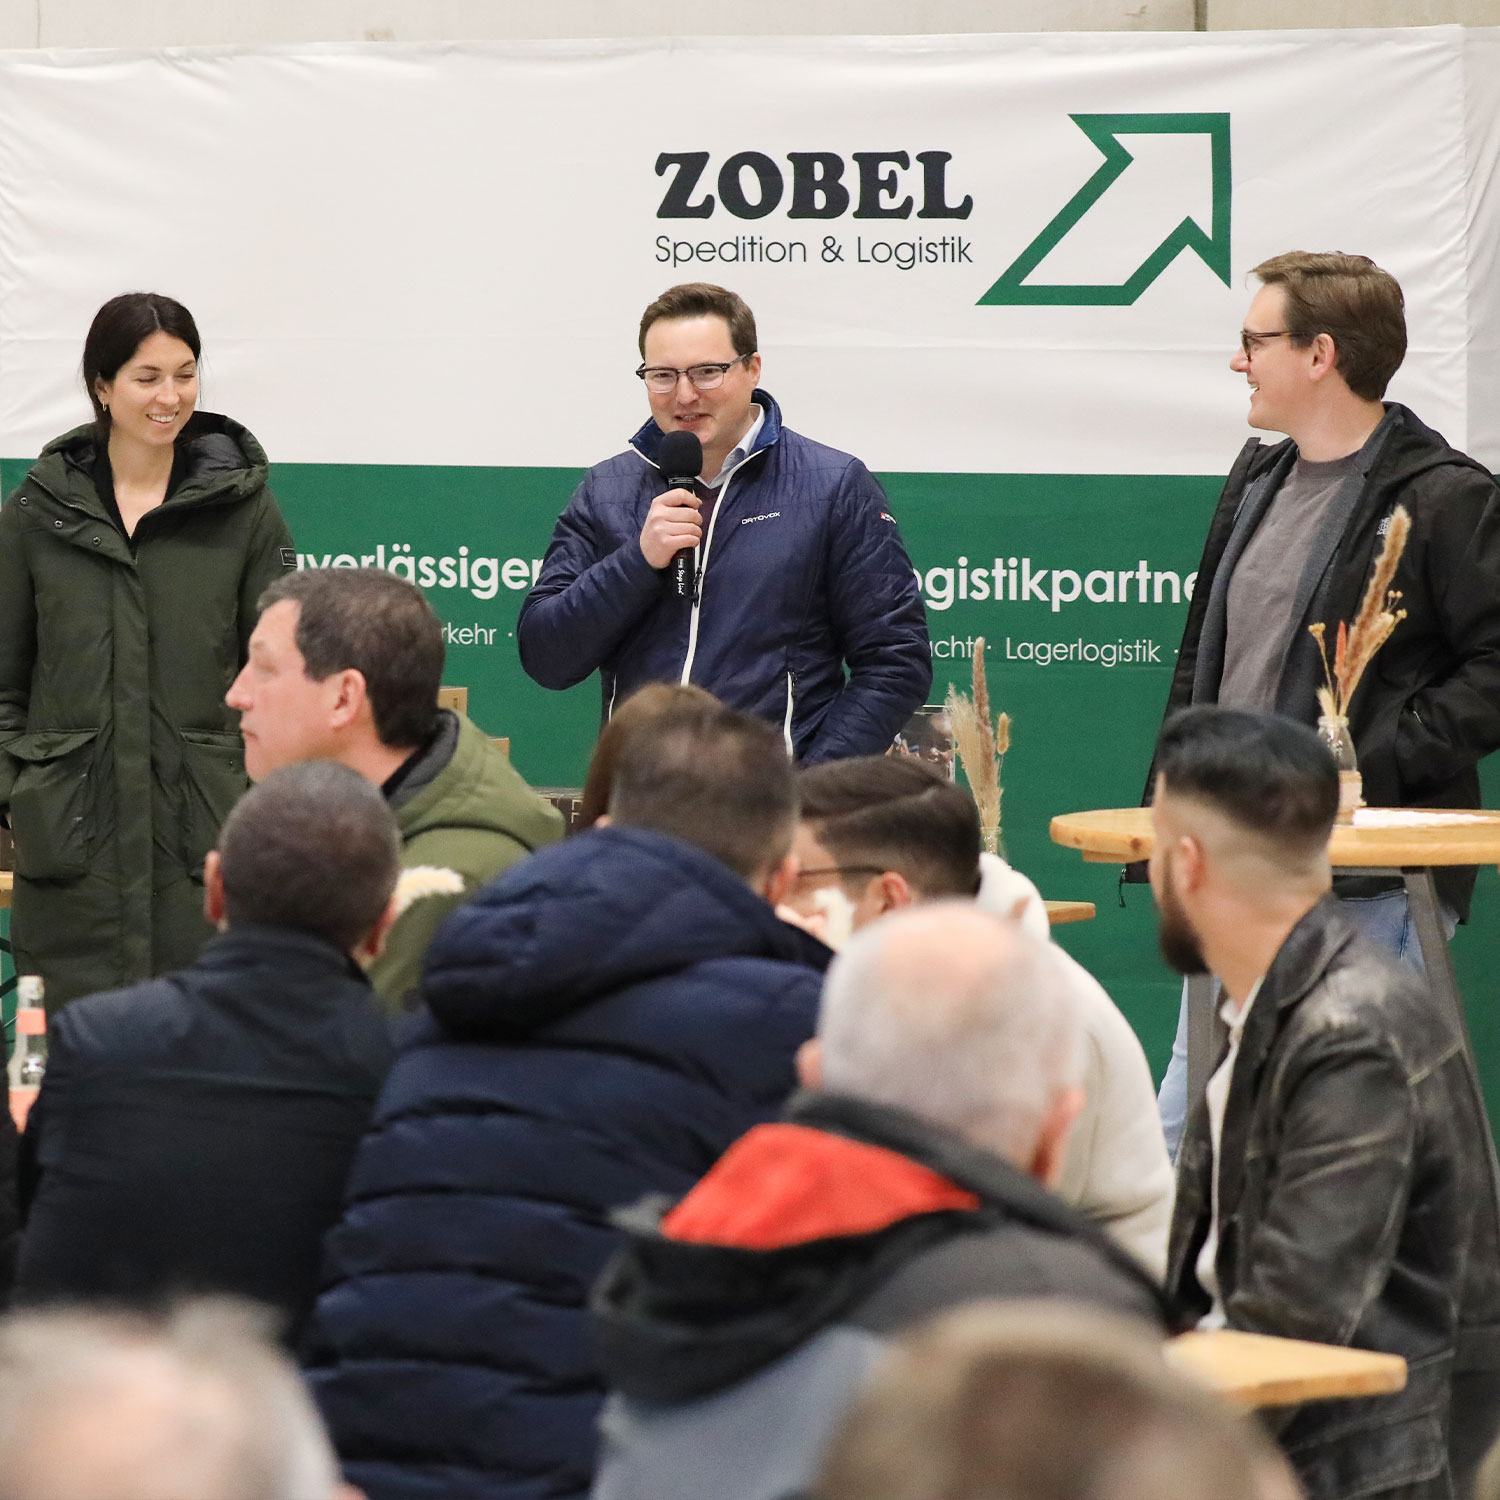 Veranstaltung well:fair foundation bei der Spedition Zobel in Wetter (Ruhr), Nordrhein-Westfalen, Deutschland